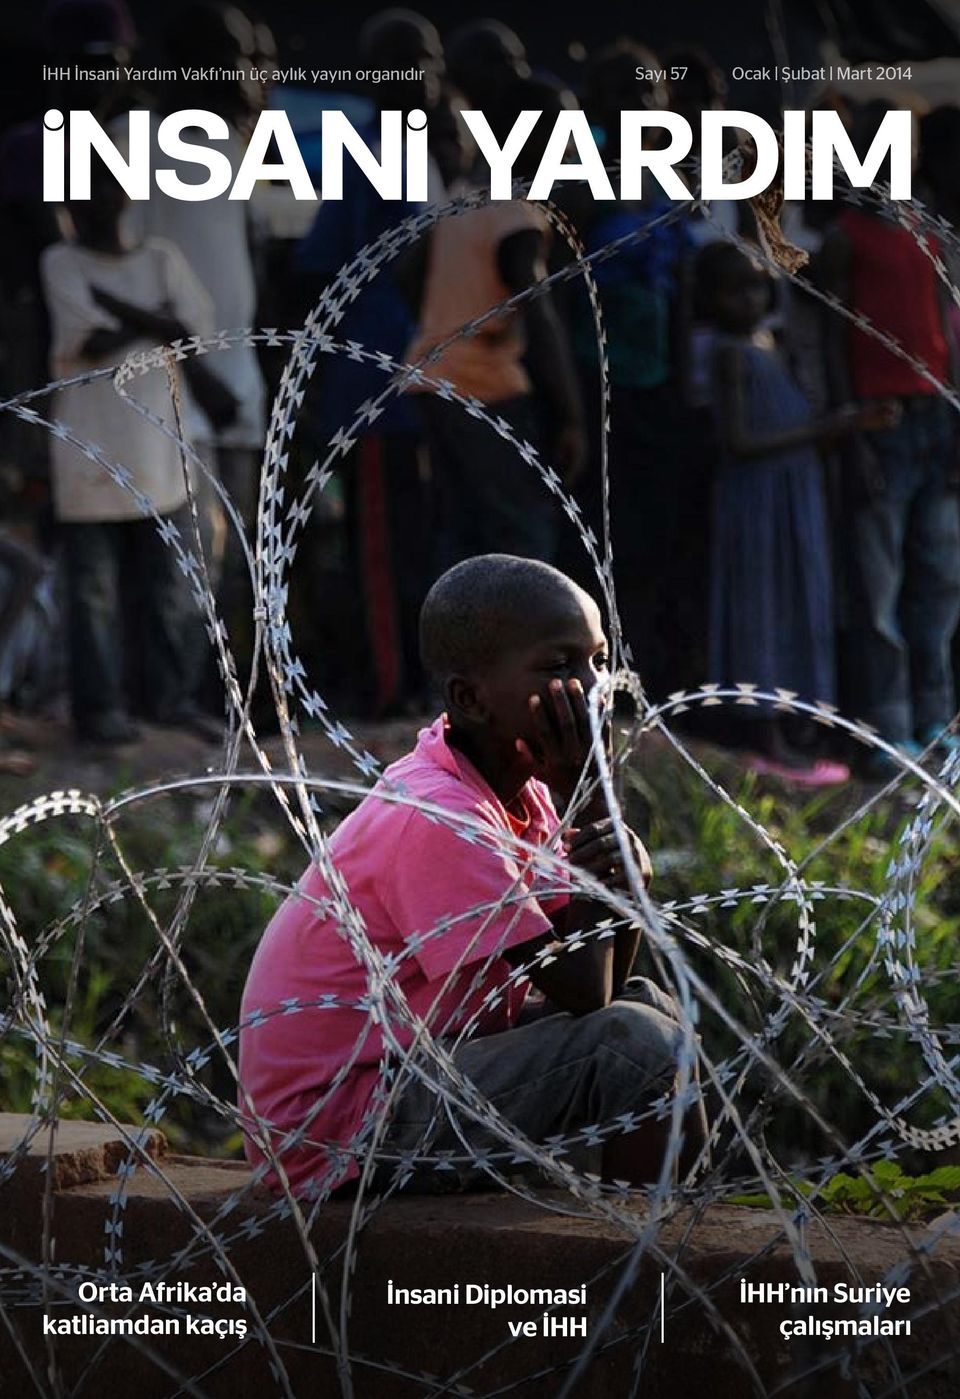 2014 Orta Afrika da katliamdan kaçış